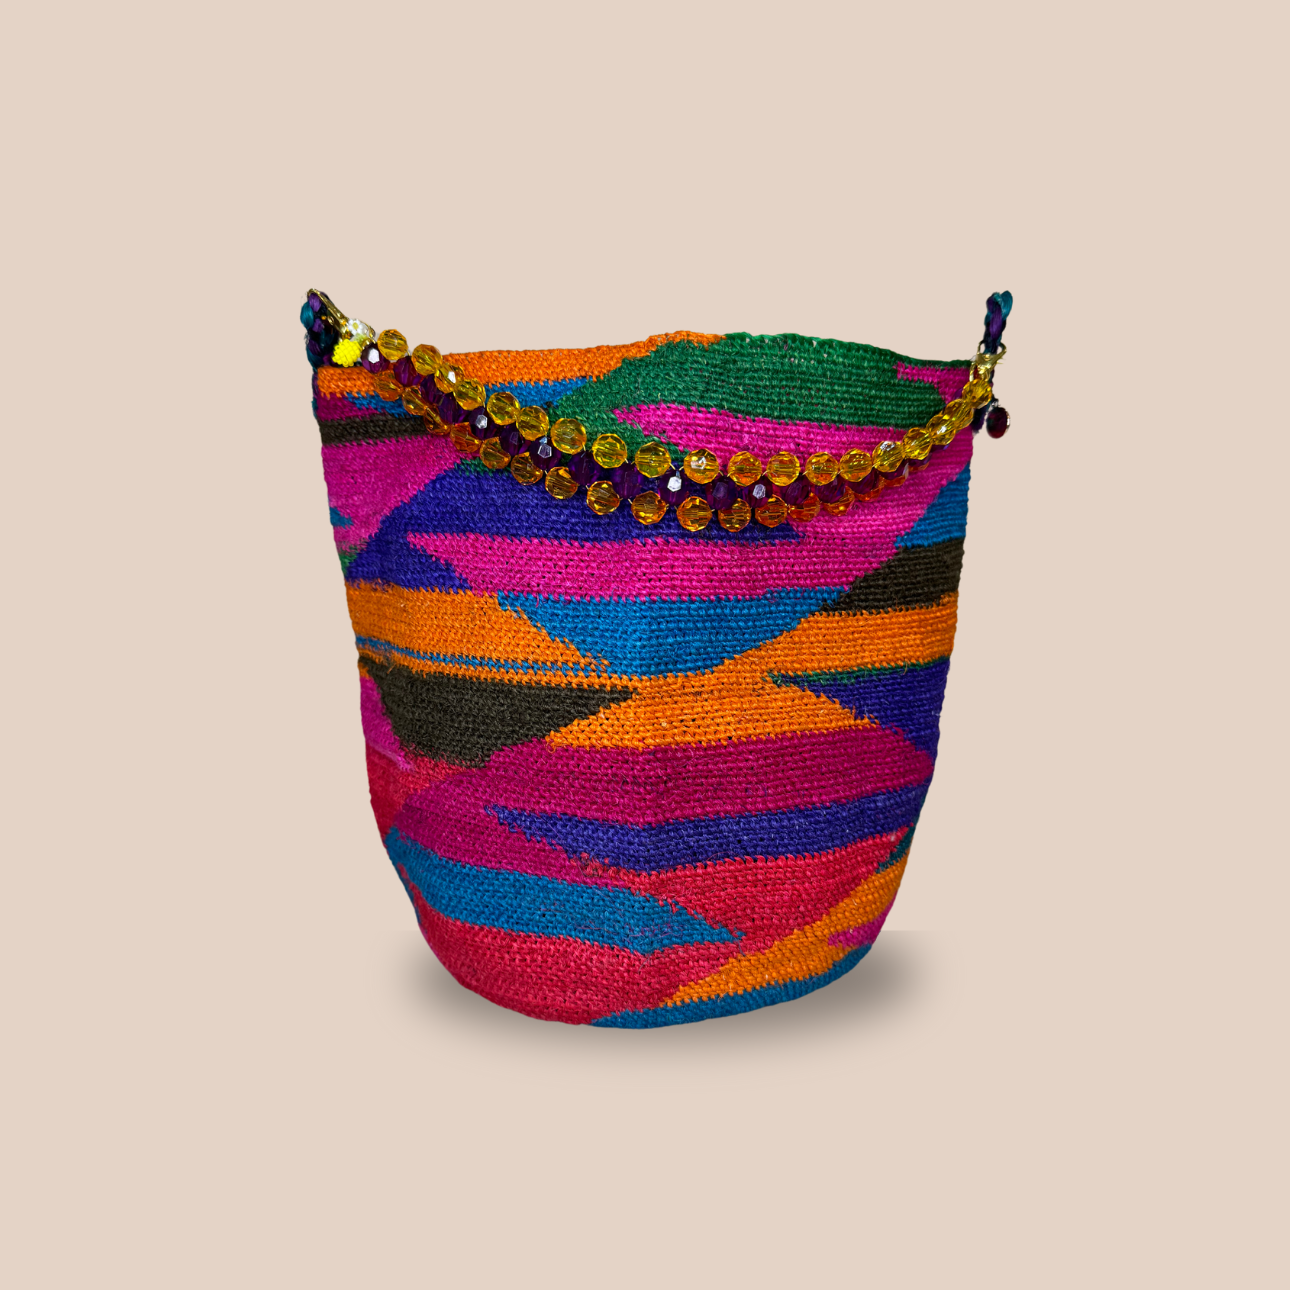 Un sac PRINCESA CITRON de Maison Badigo, un sac coloré, fait en fibres de cactus naturelle, anse a perles avec motif citron